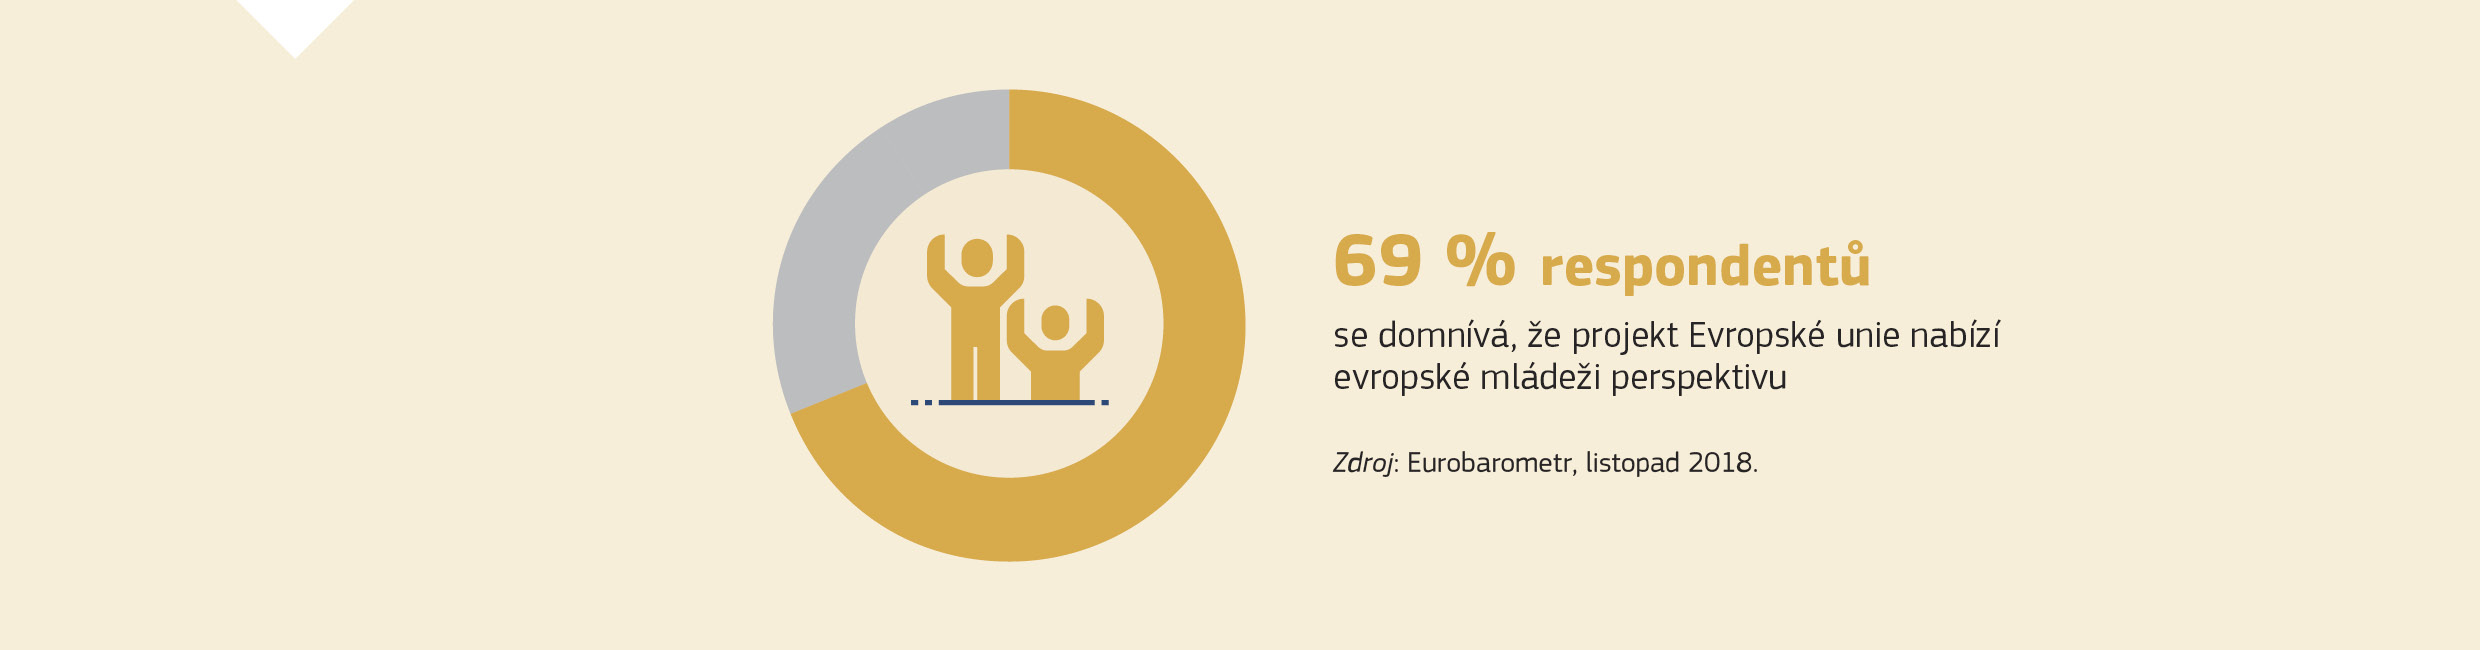 69 % respondentů se domnívá, že projekt Evropské unie nabízí evropské mládeži perspektivu. Zdroj: Eurobarometr, listopad 2018.